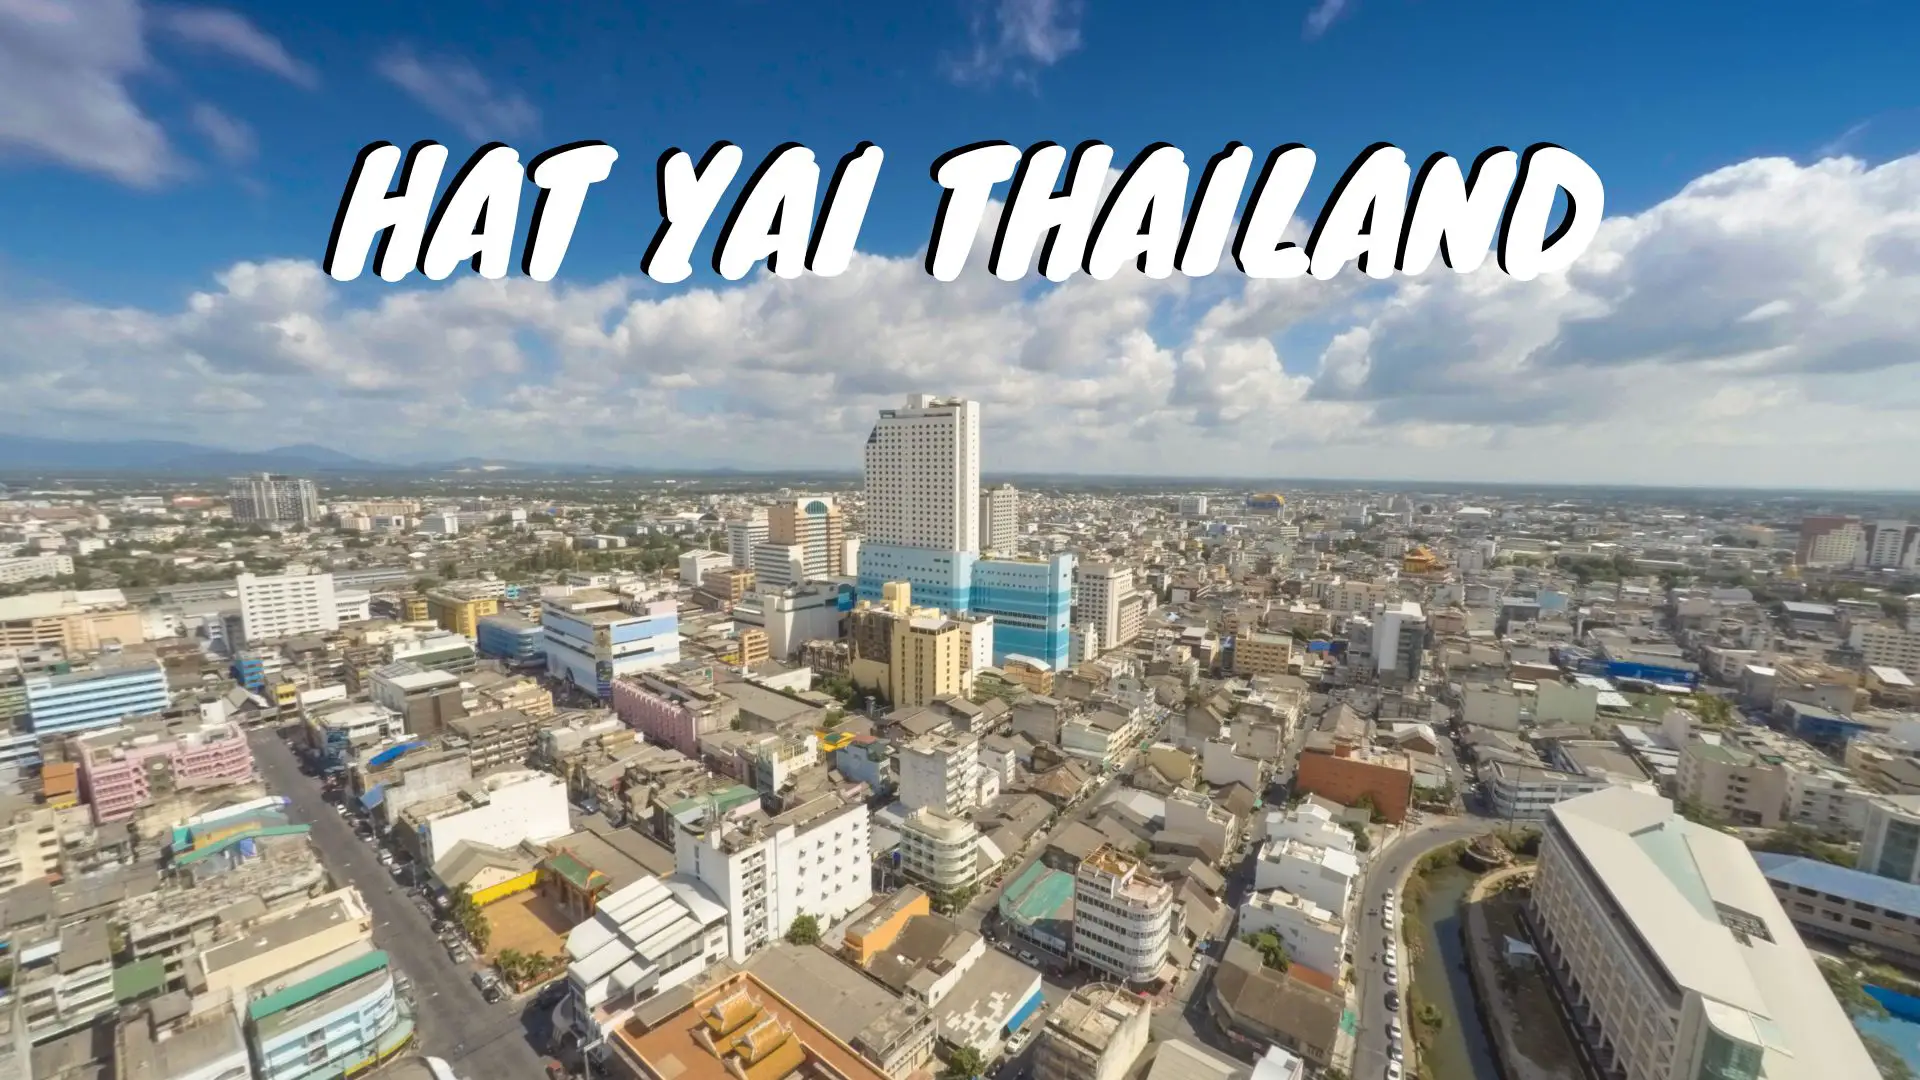 HAT YAI THAILAND